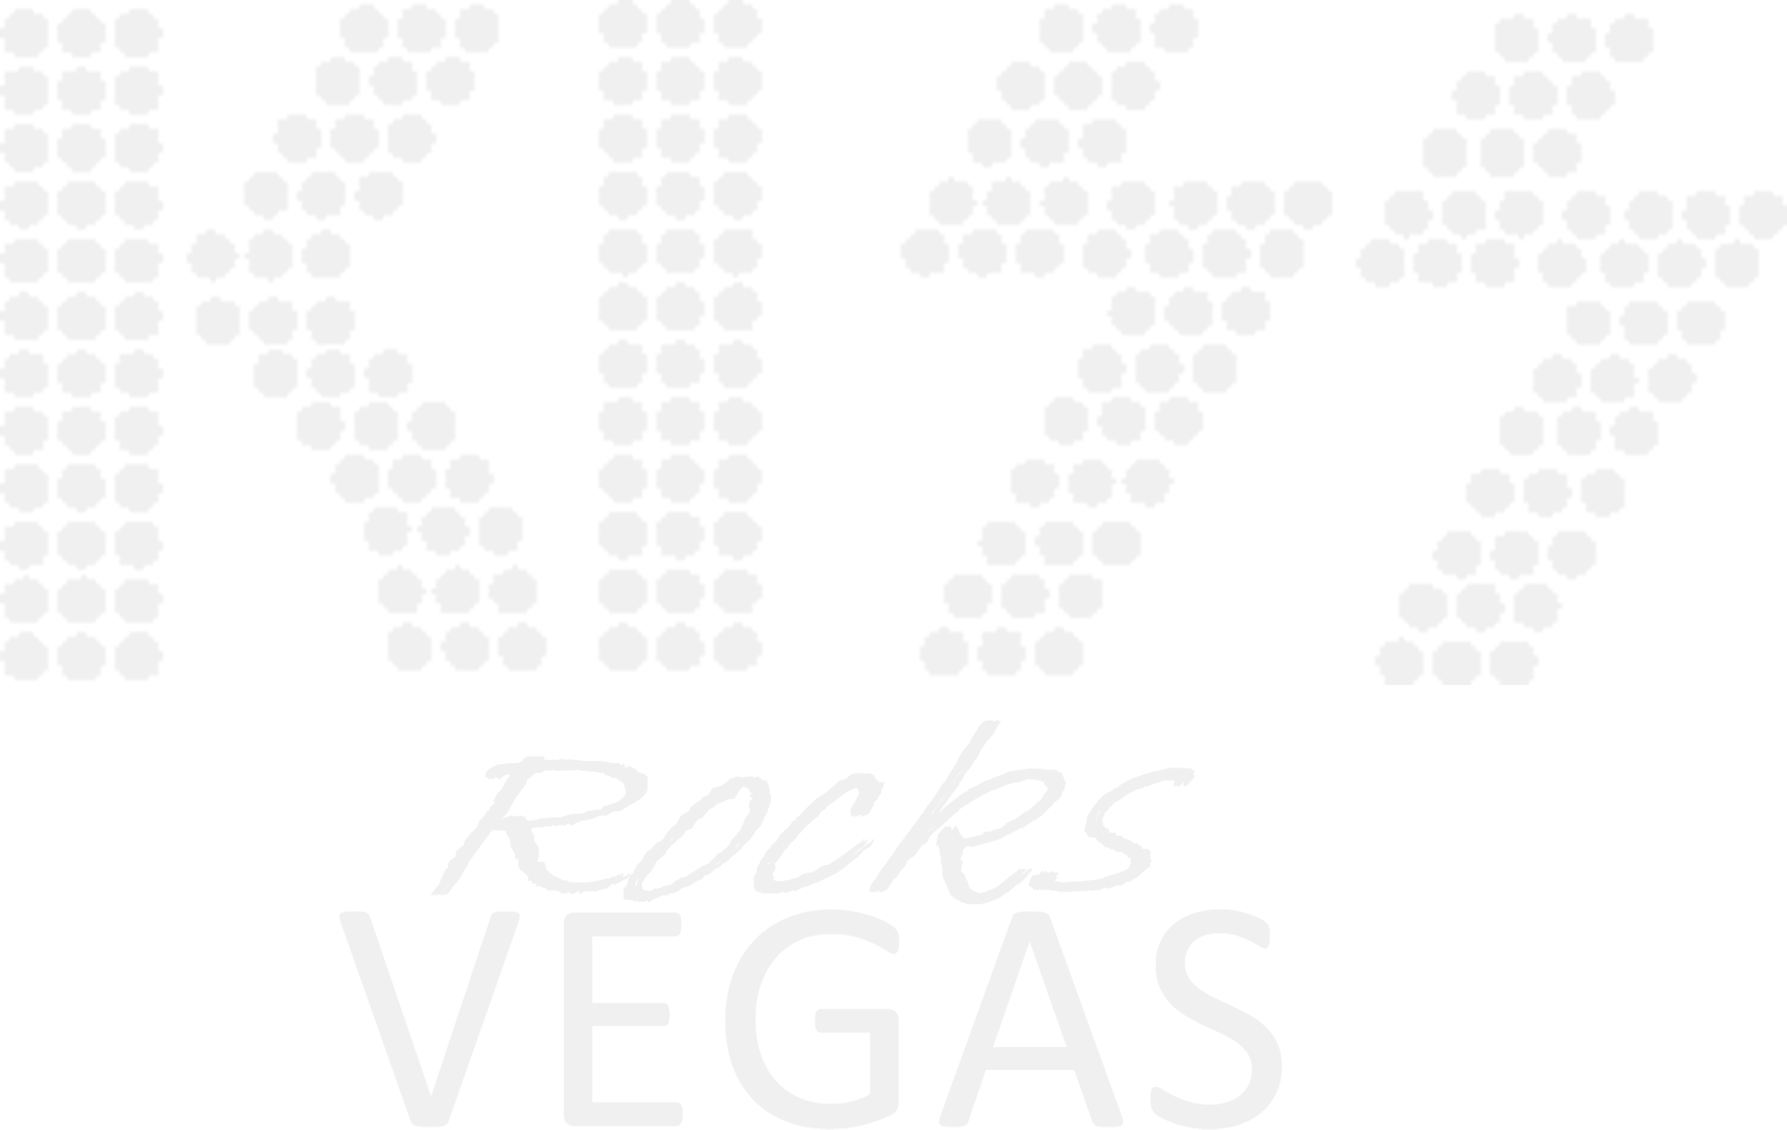 KISS - Rocks Vegas logo